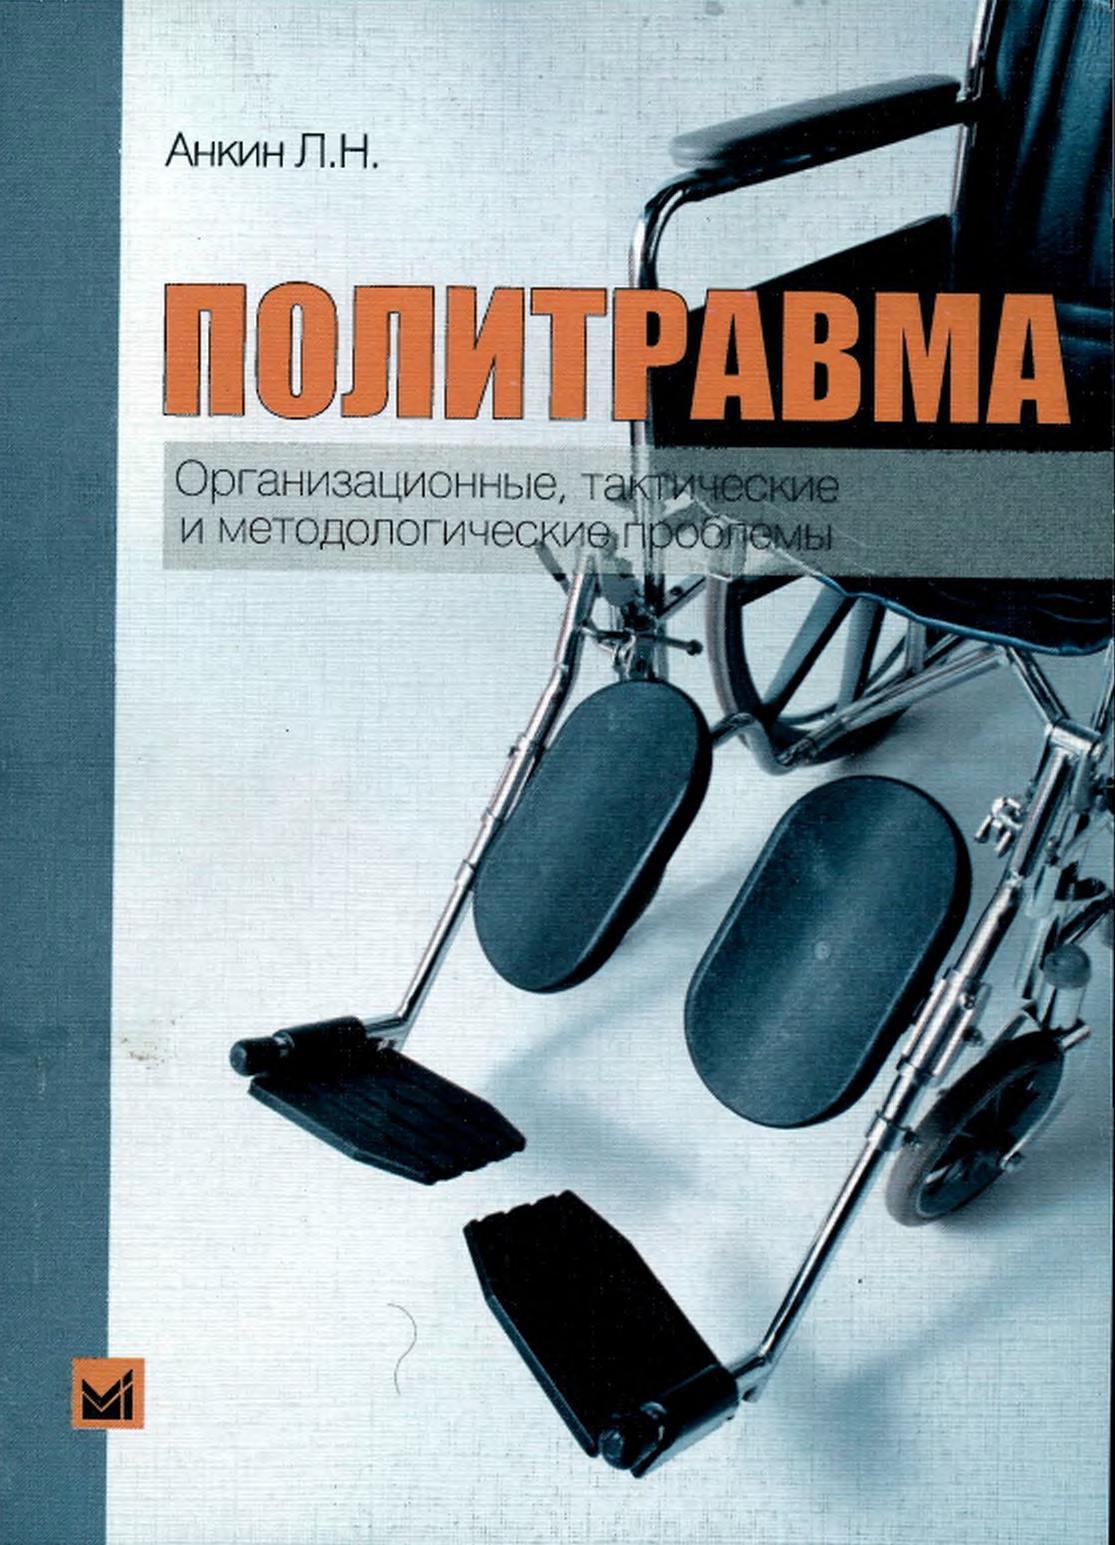 Политравма, Организационные, тактические и методологические проблемы, Анкин Л.Н., 2004